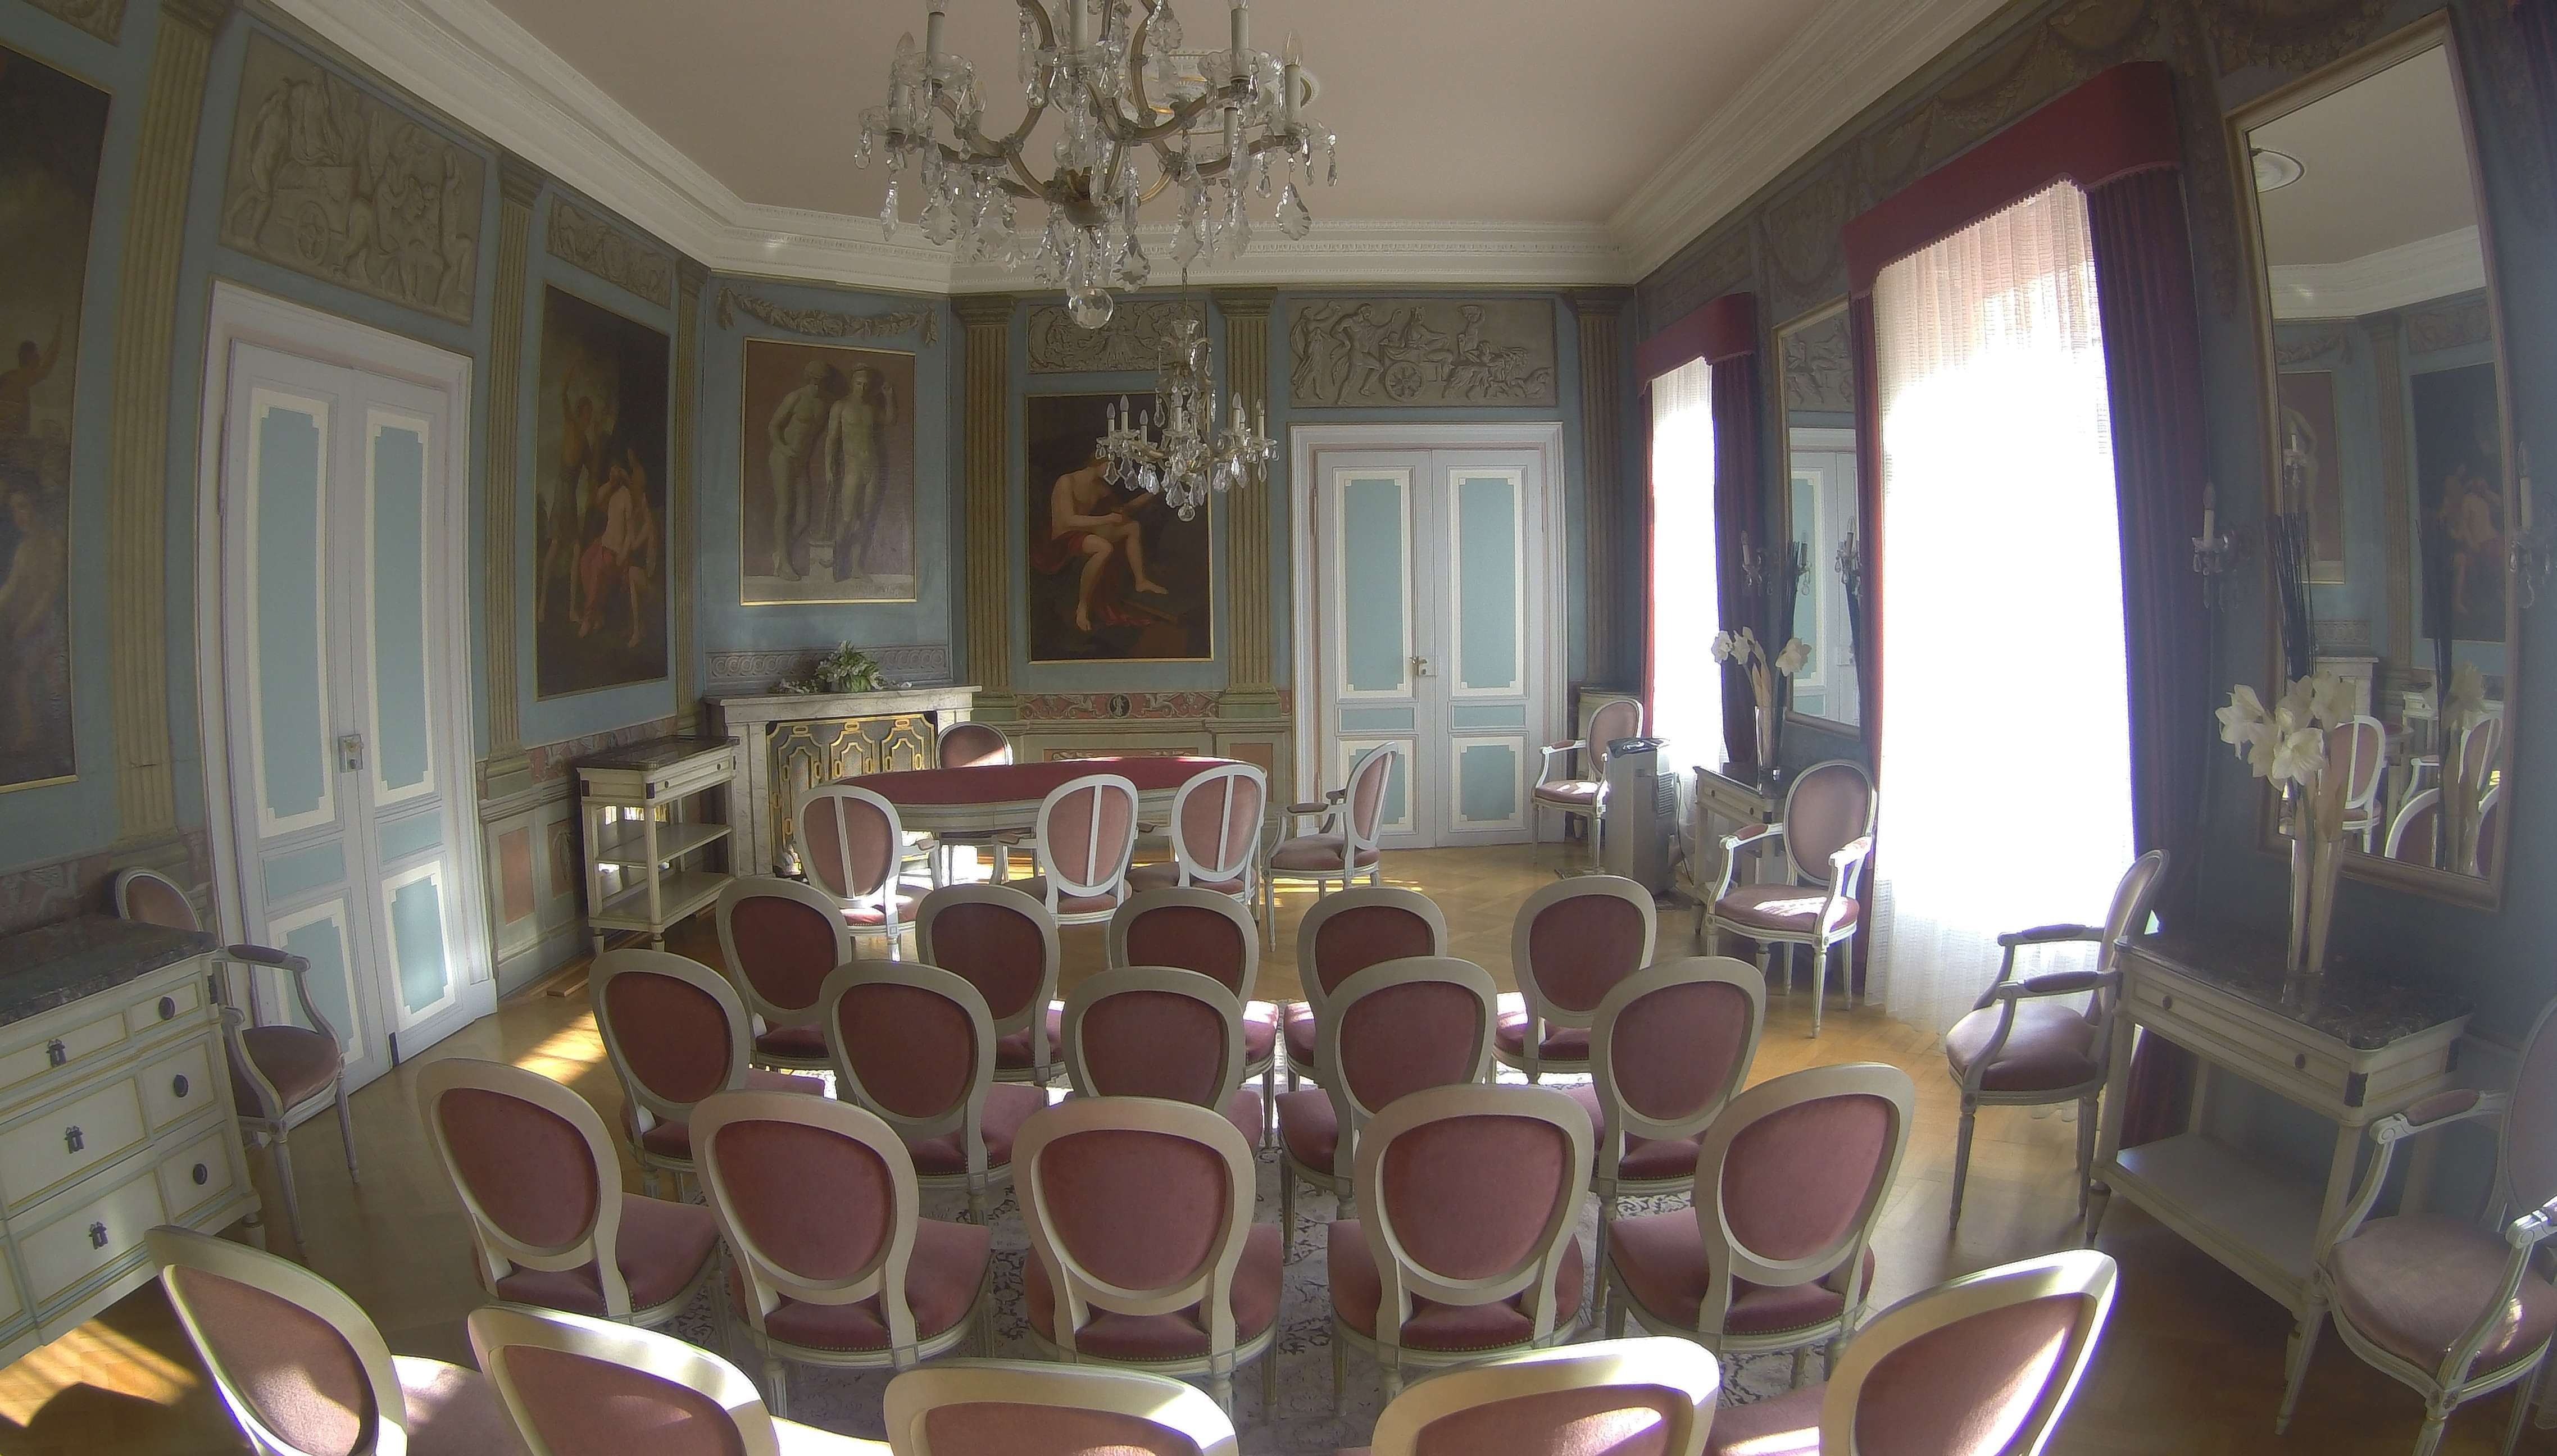  Spiegelsaal im Historischen Leimener Rathaus 